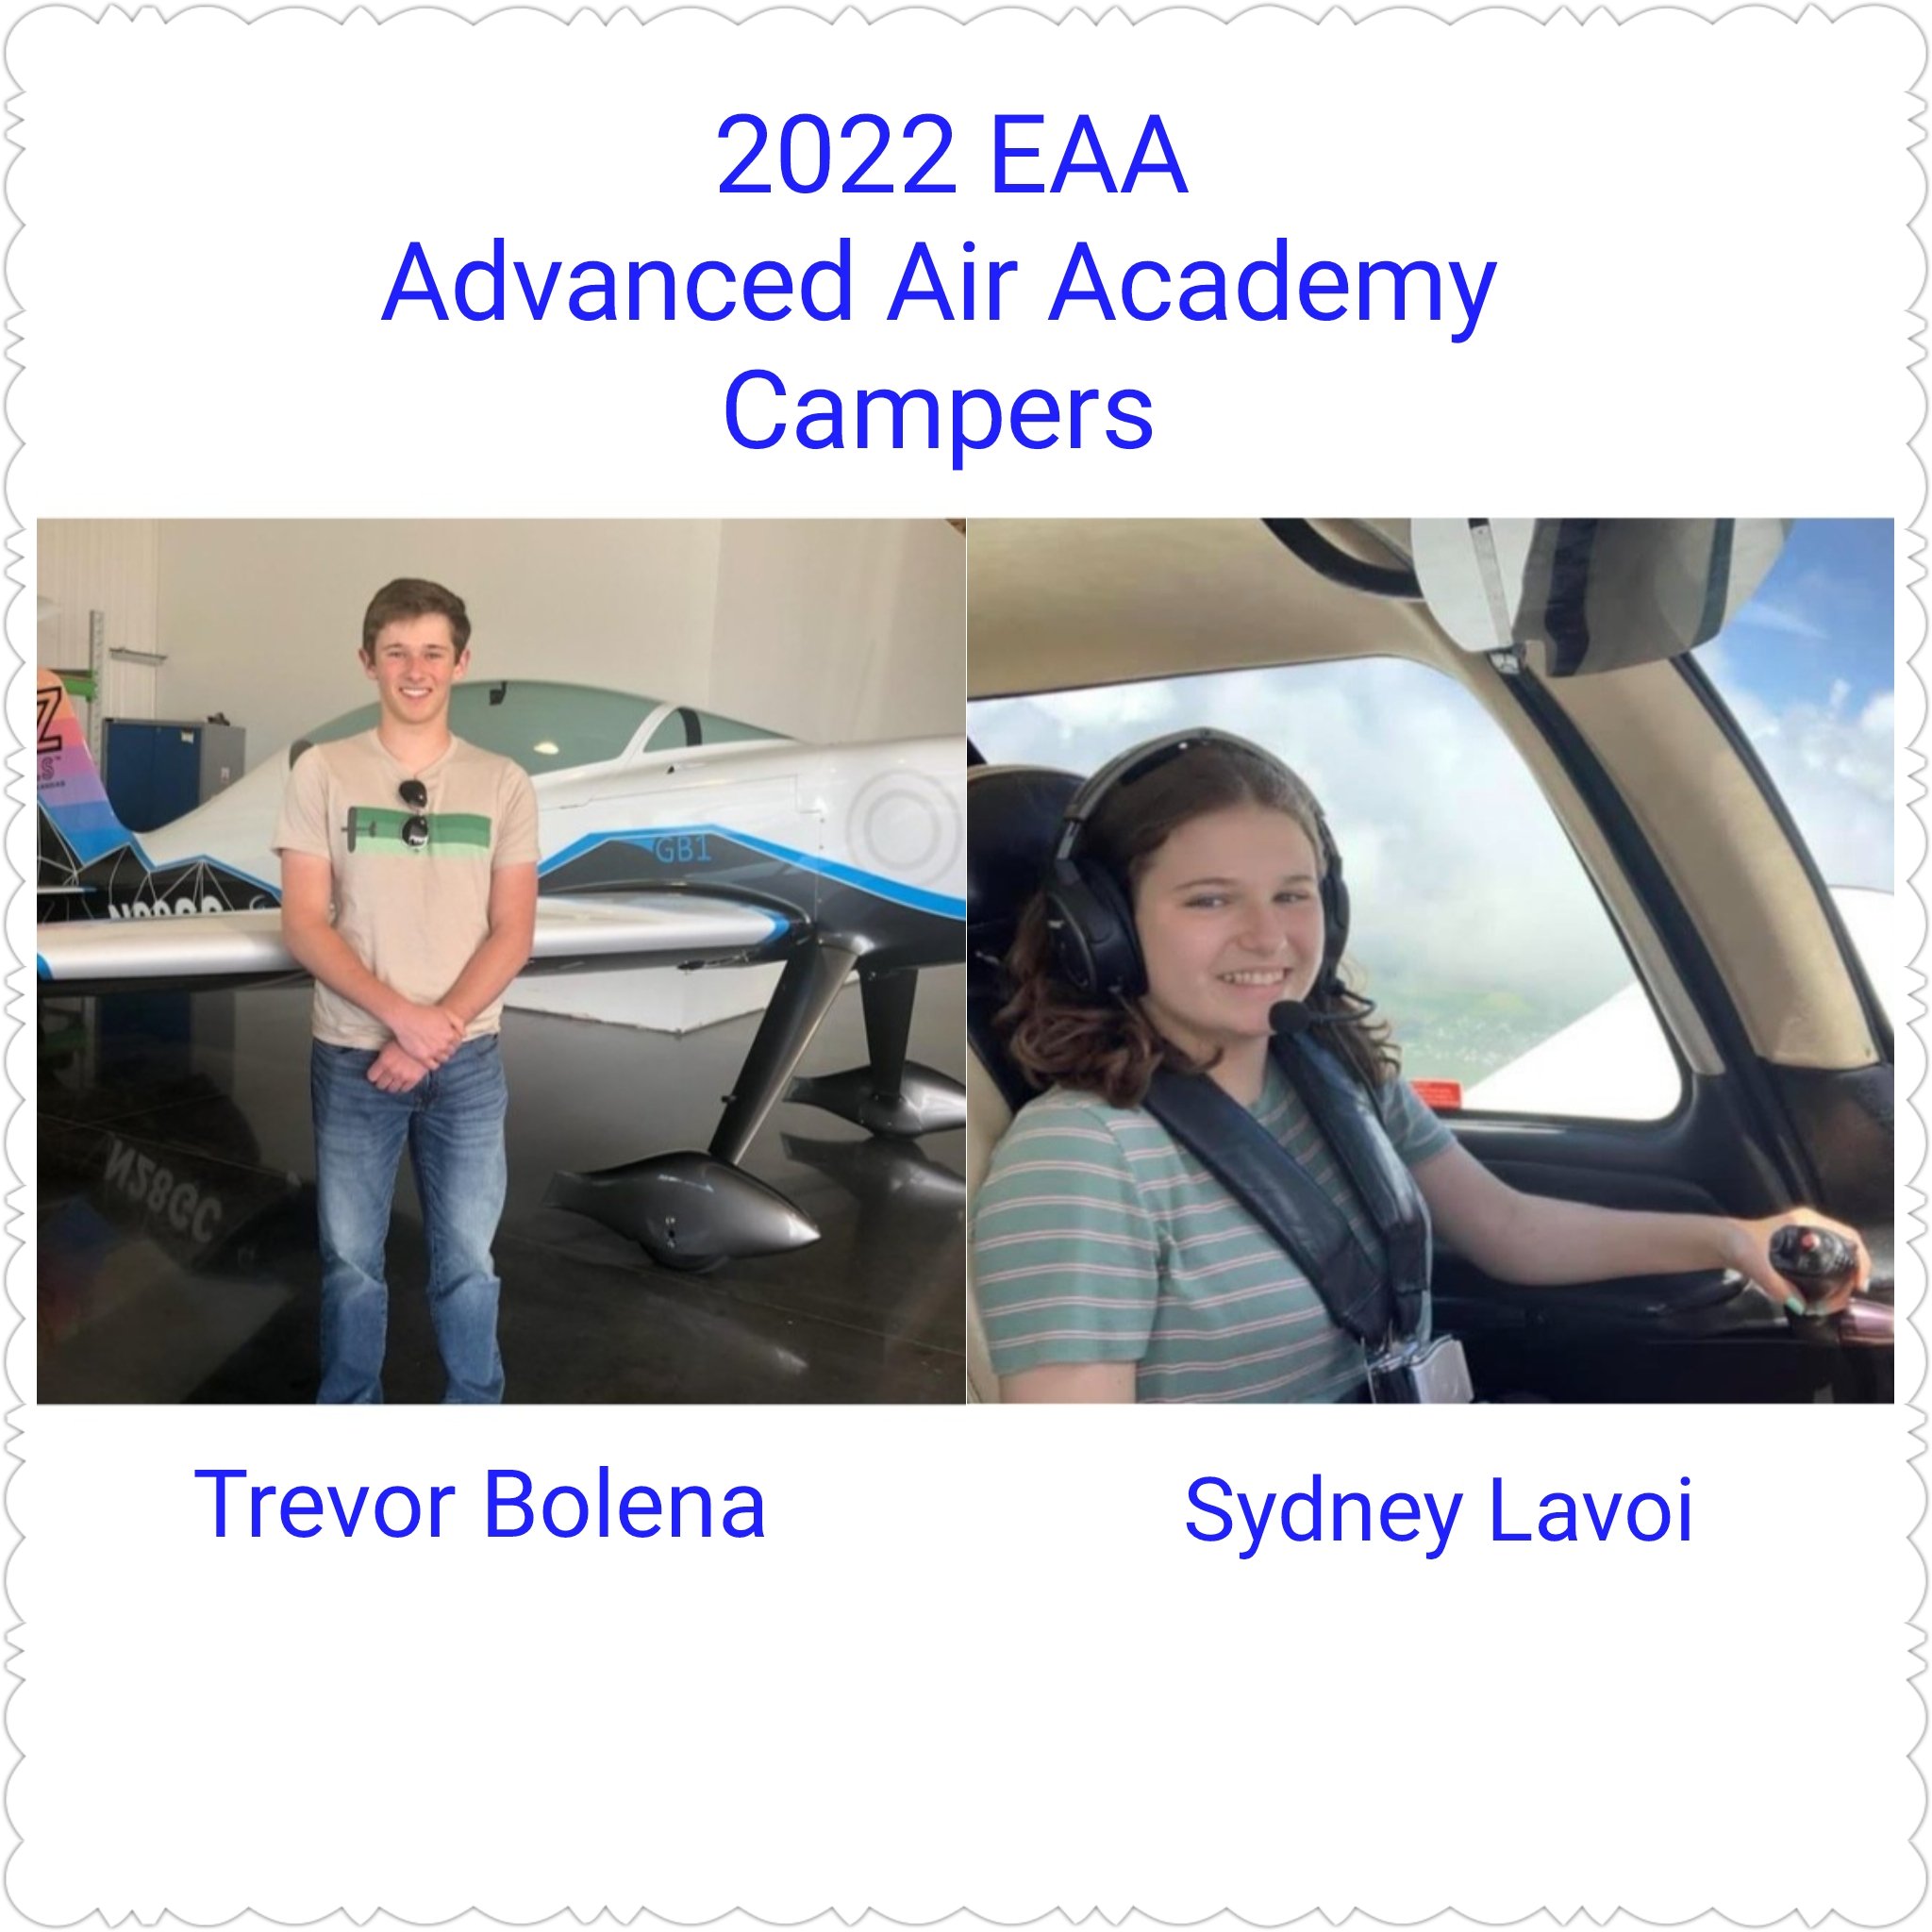 2022 EAA Campers.jpg